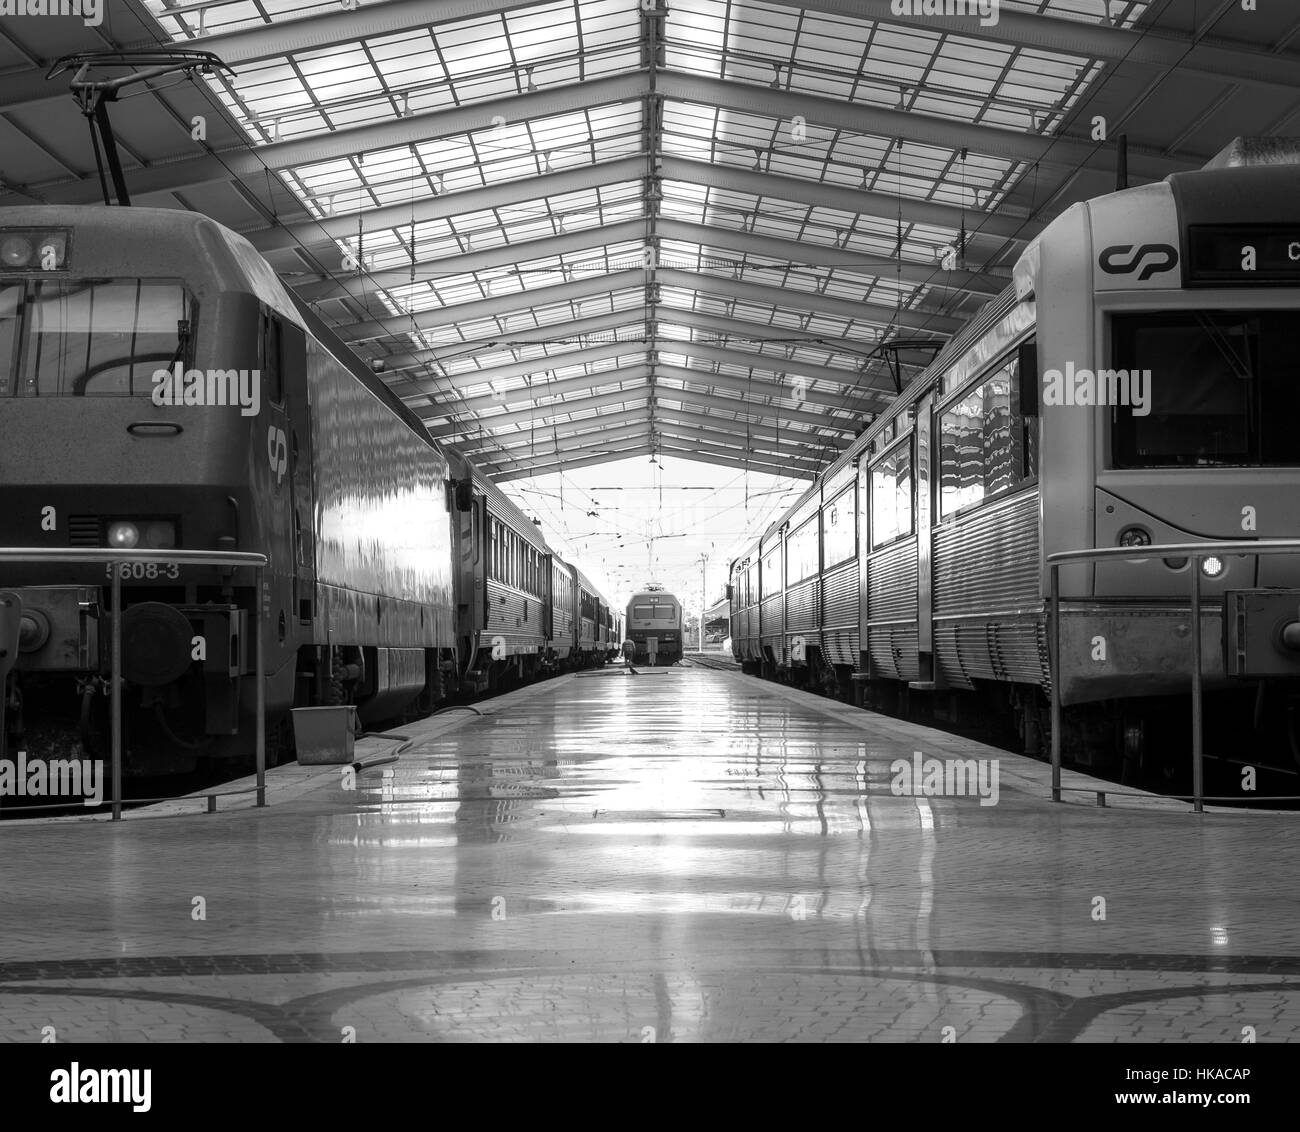 Harmonie-Symmetrie der Linien Zug Bahnhof b&w nostalgische Atmosphäre. Licht und Schatten in jeden Tag zum Bahnhof Stockfoto